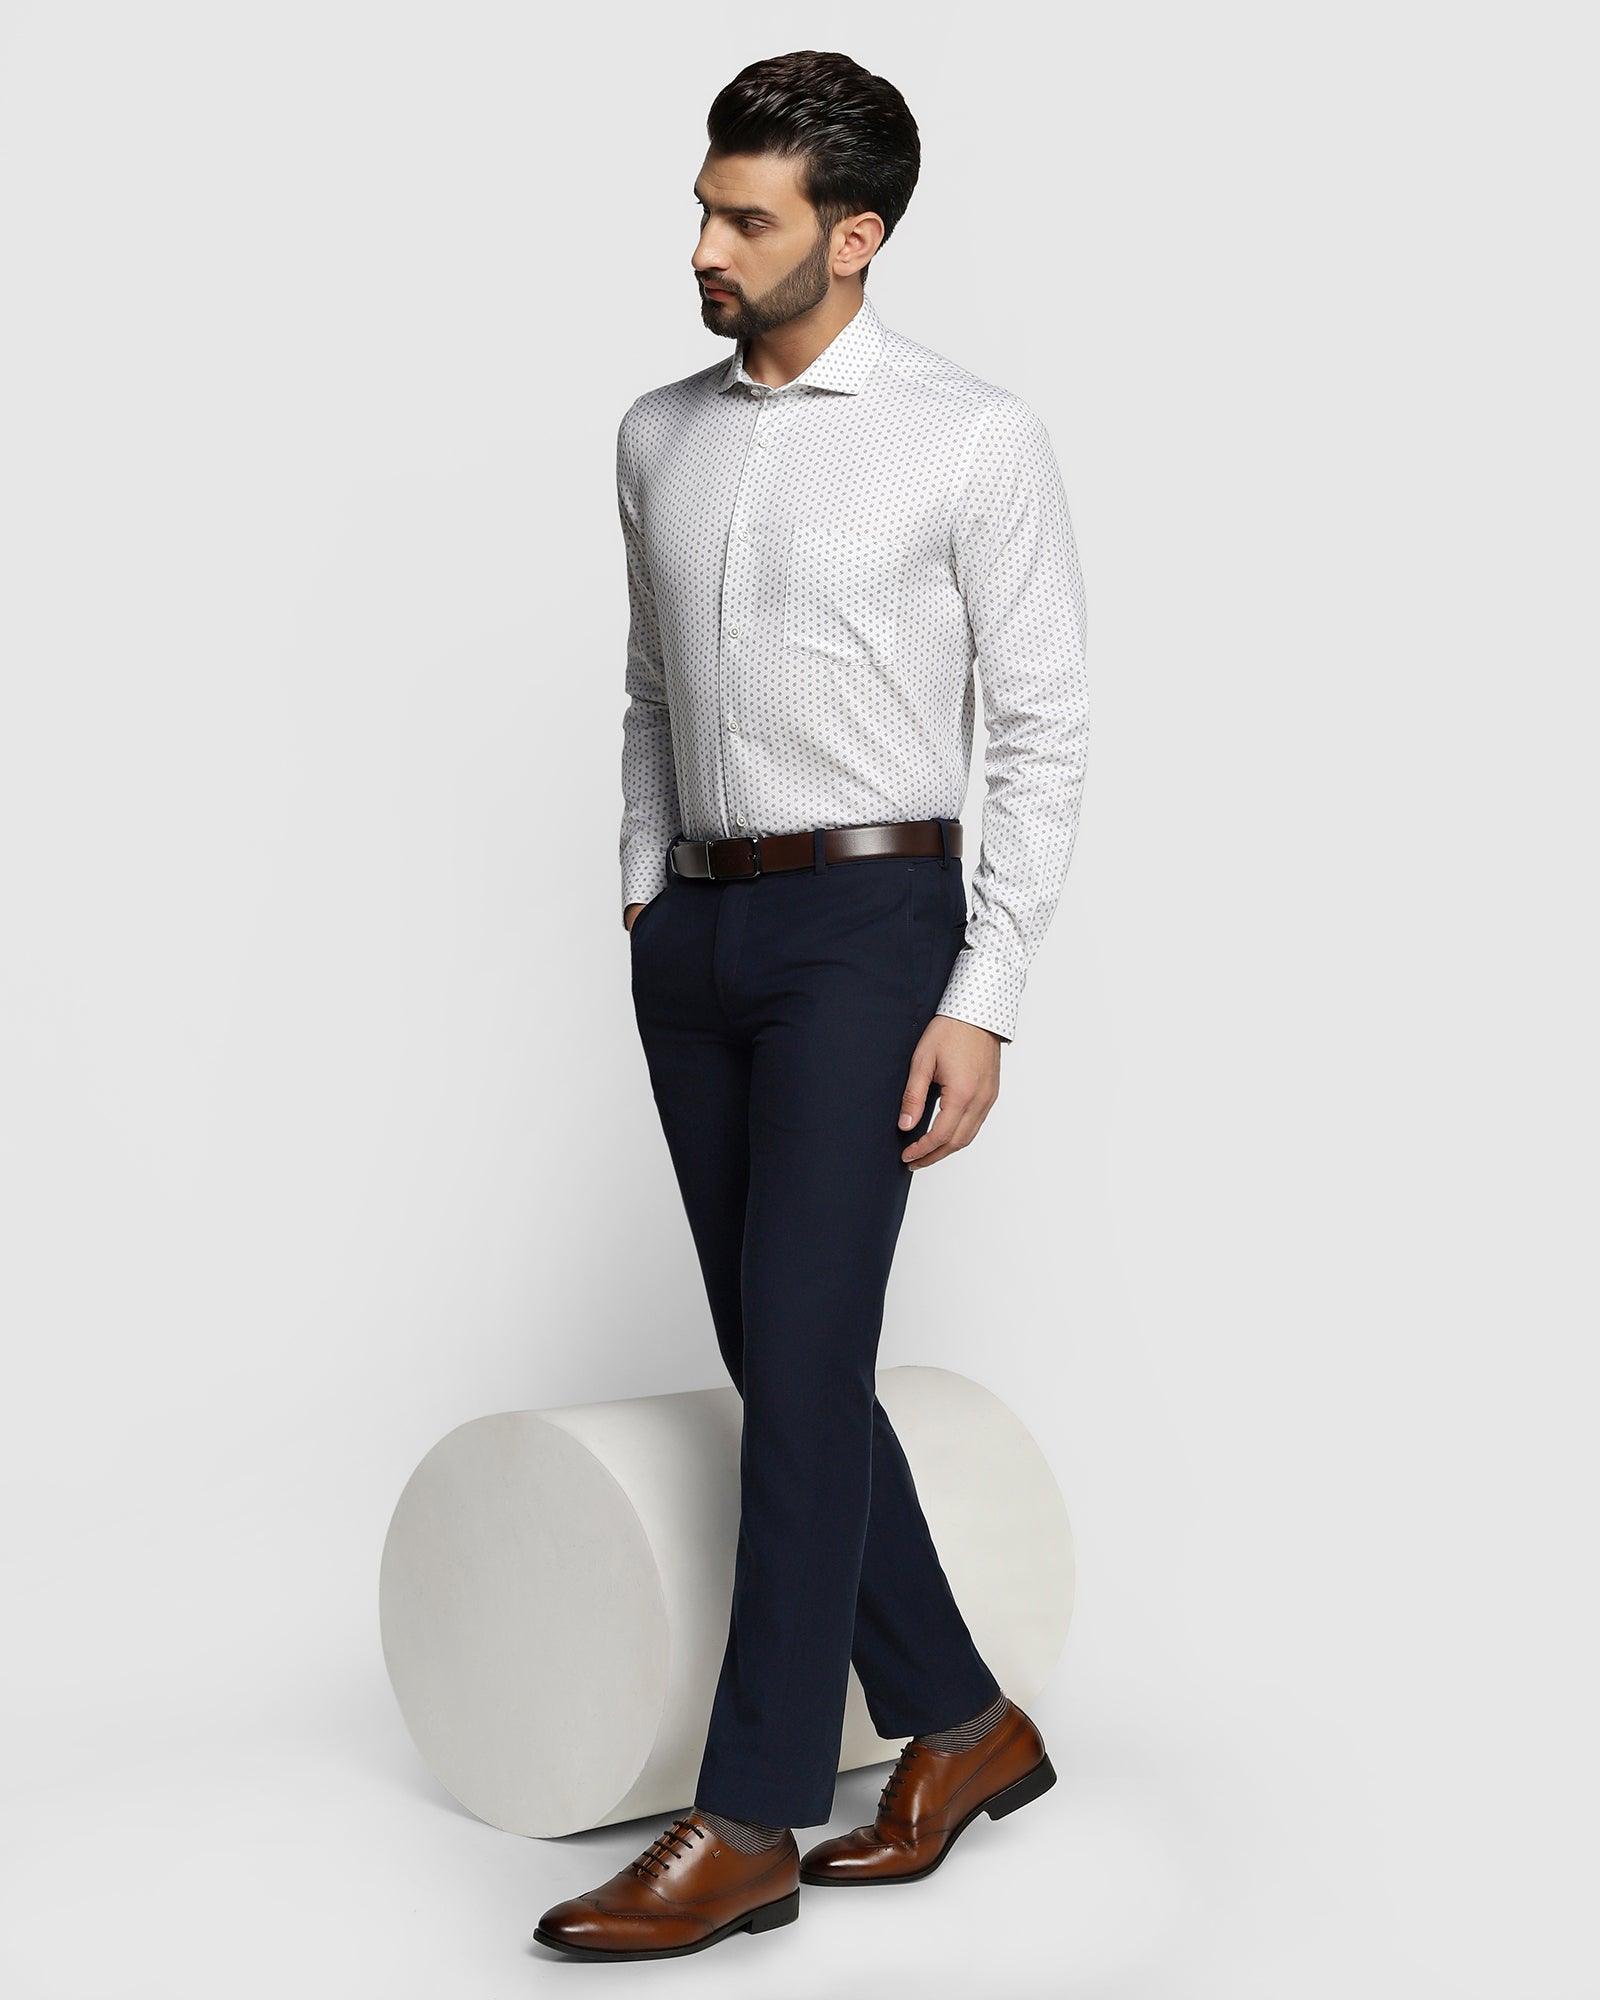 Formal White Printed Shirt - Bing